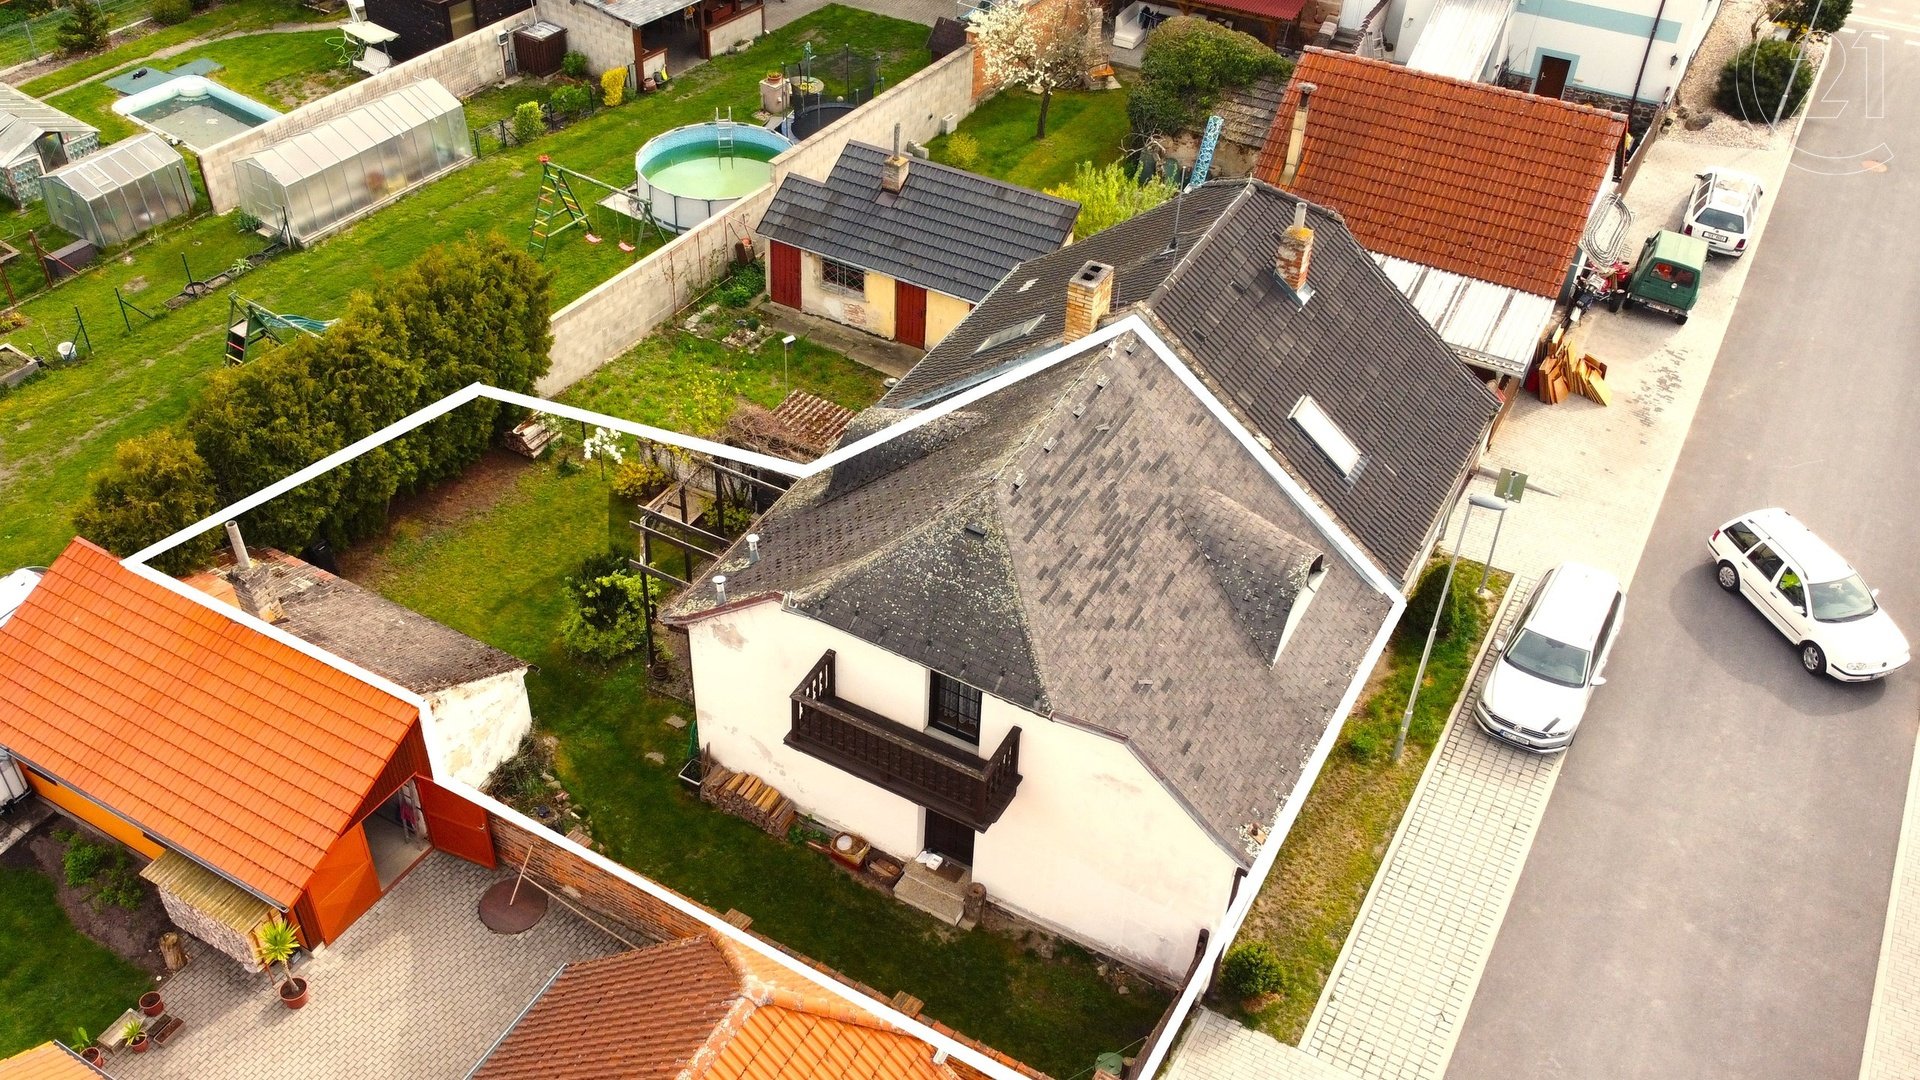 Prodej rodinného domu s pozemkem 205 m² ve Veselí nad Lužnicí - ul. V Slukova.